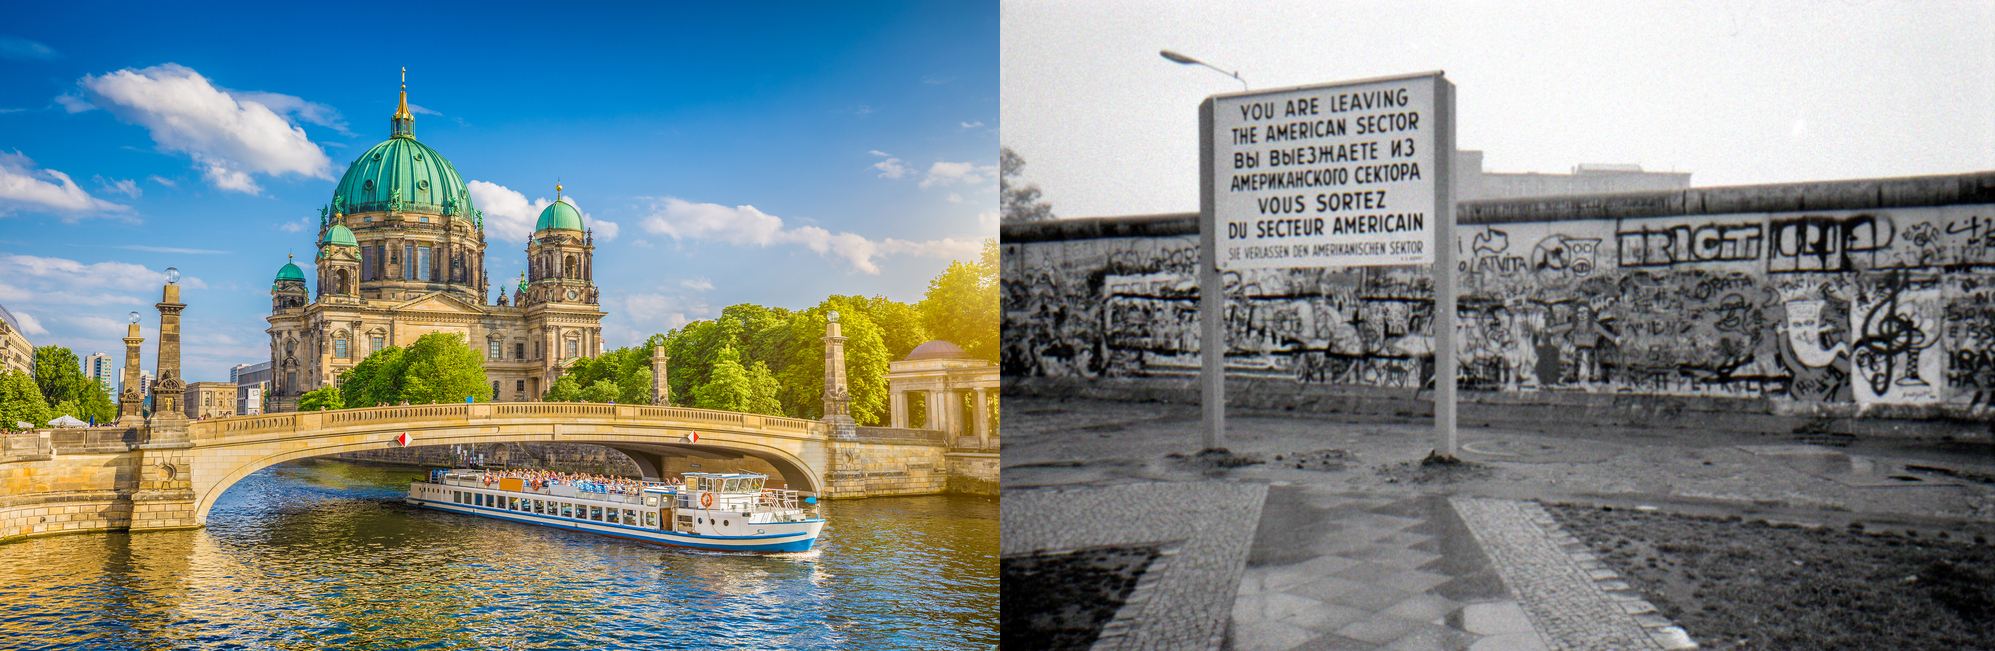 Slika lijevo prikazuje zapadni, a slika desno istočni Berlin u vrijeme DDR-a.